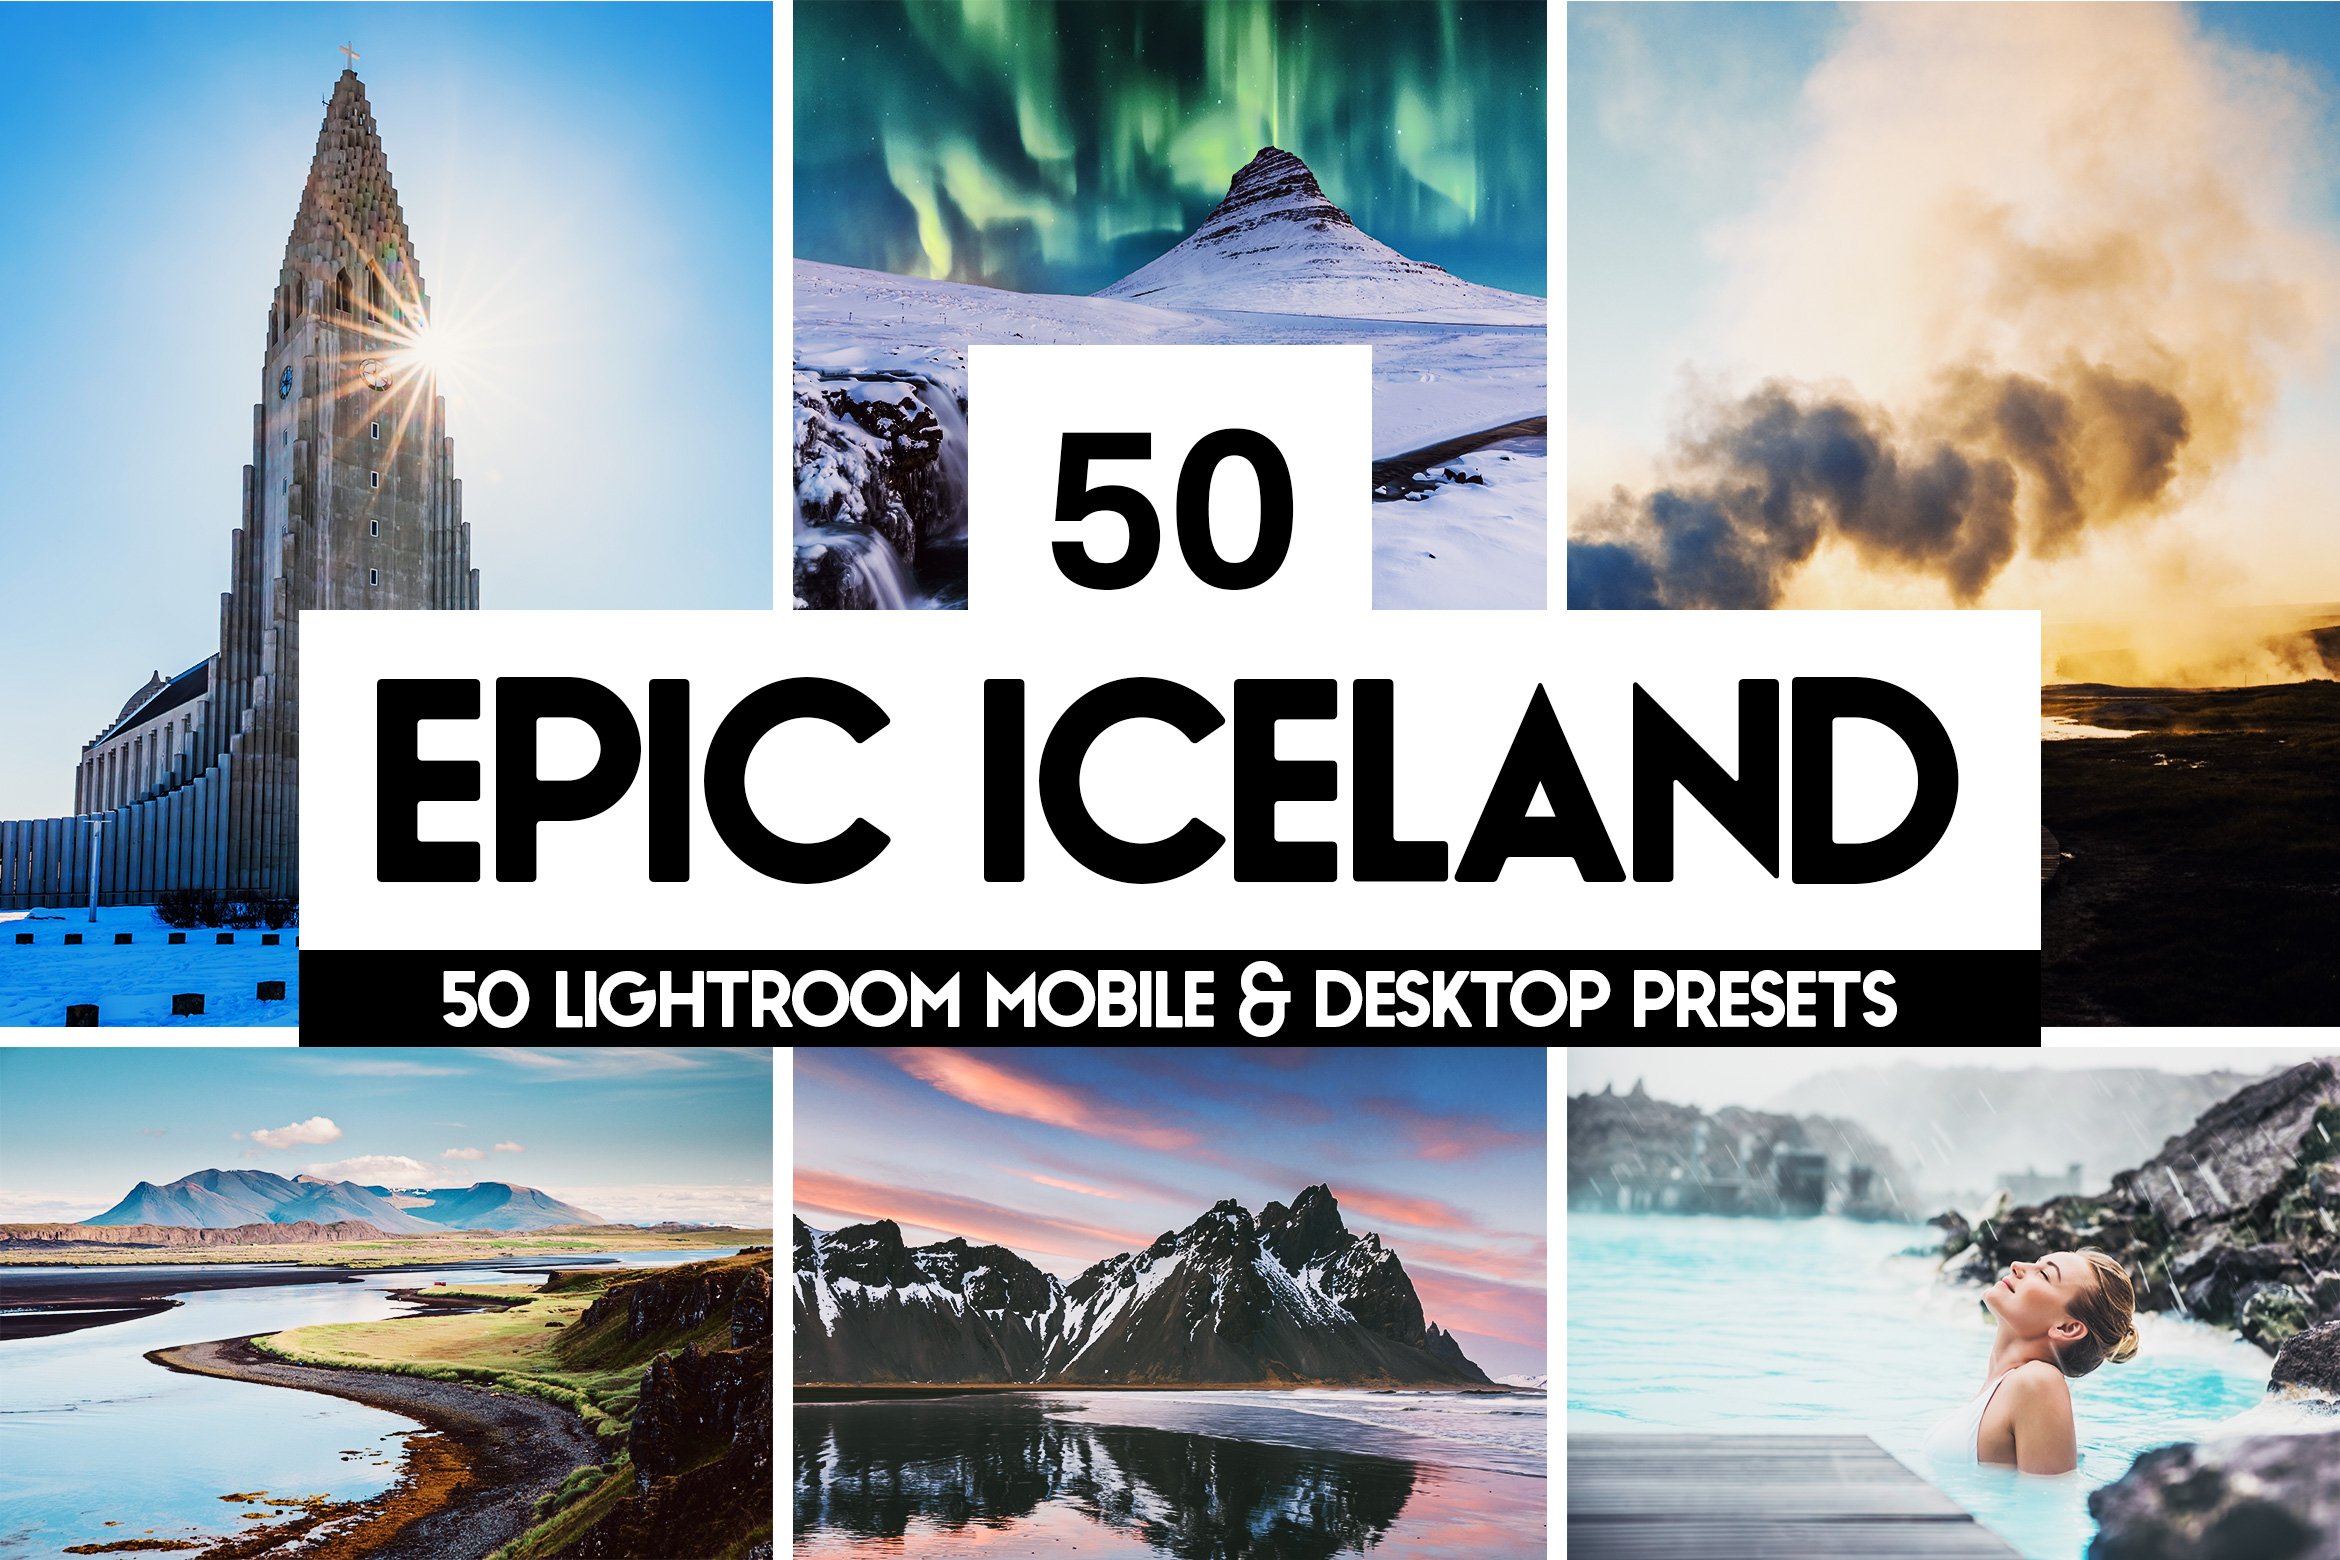 Epic Iceland - 50 Lightroom Presetscover image.